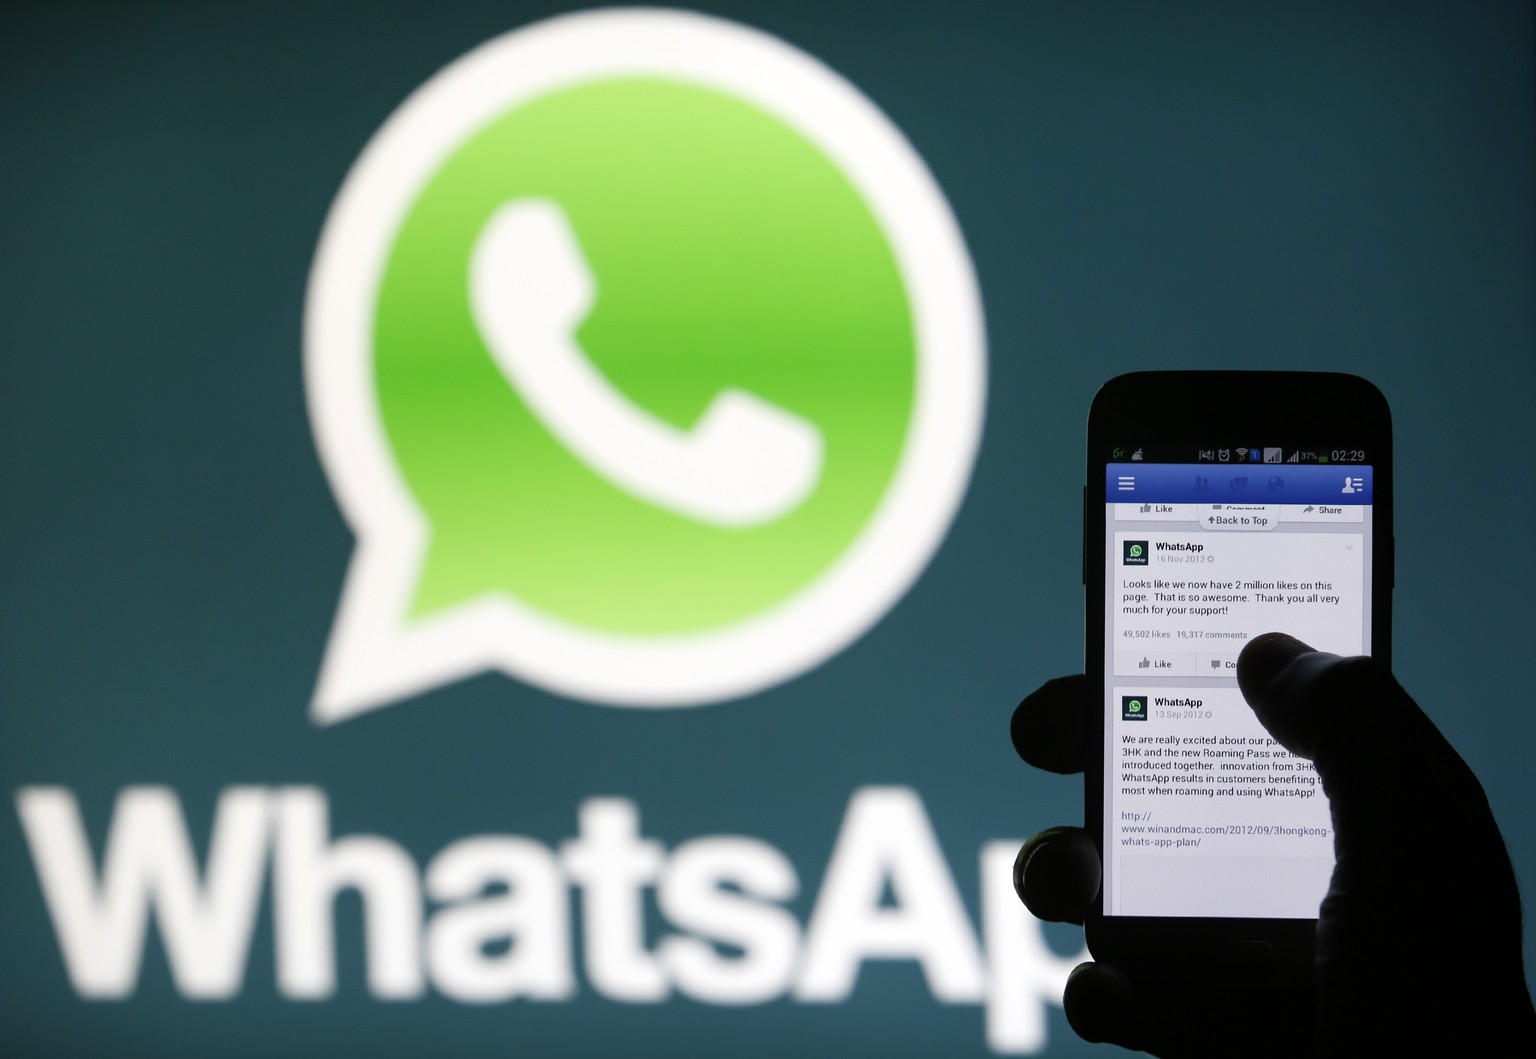 200 Millionen männliche WhatsApp-Nutzer wurden bereits von W.I.F.E. ausspioniert.